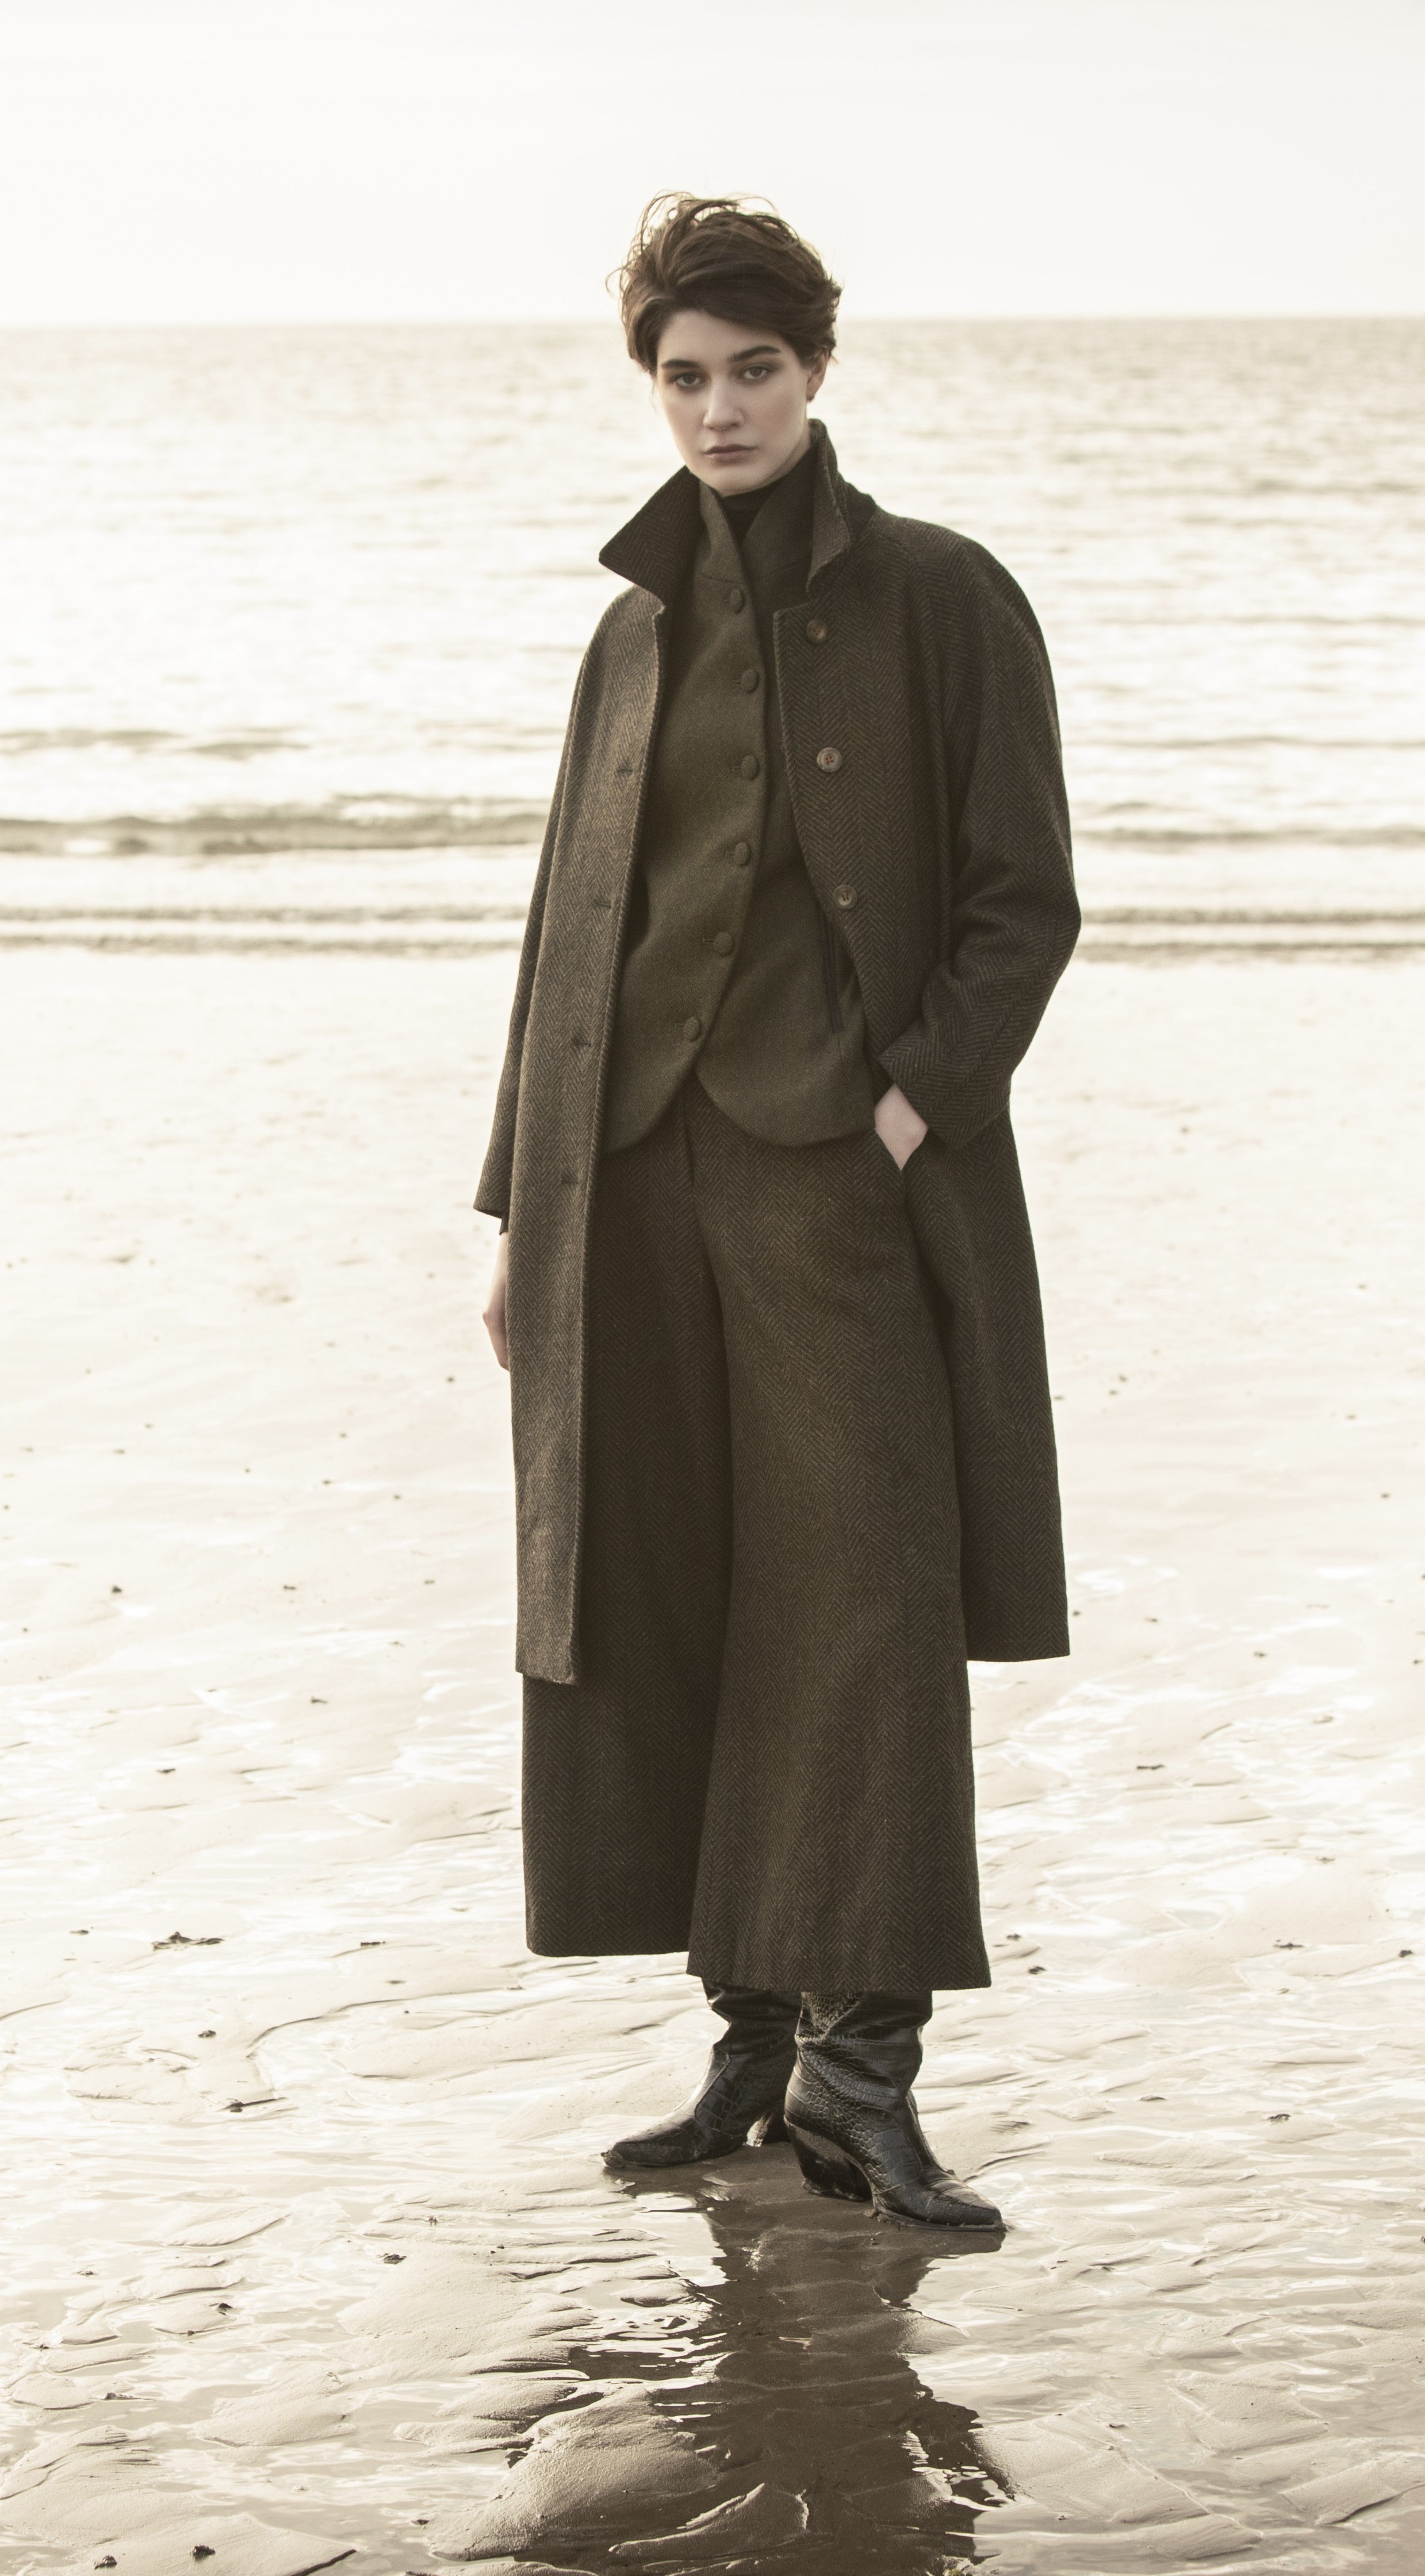 Woman on beach in tweed long jacket tweed jacket and Tweed pants.